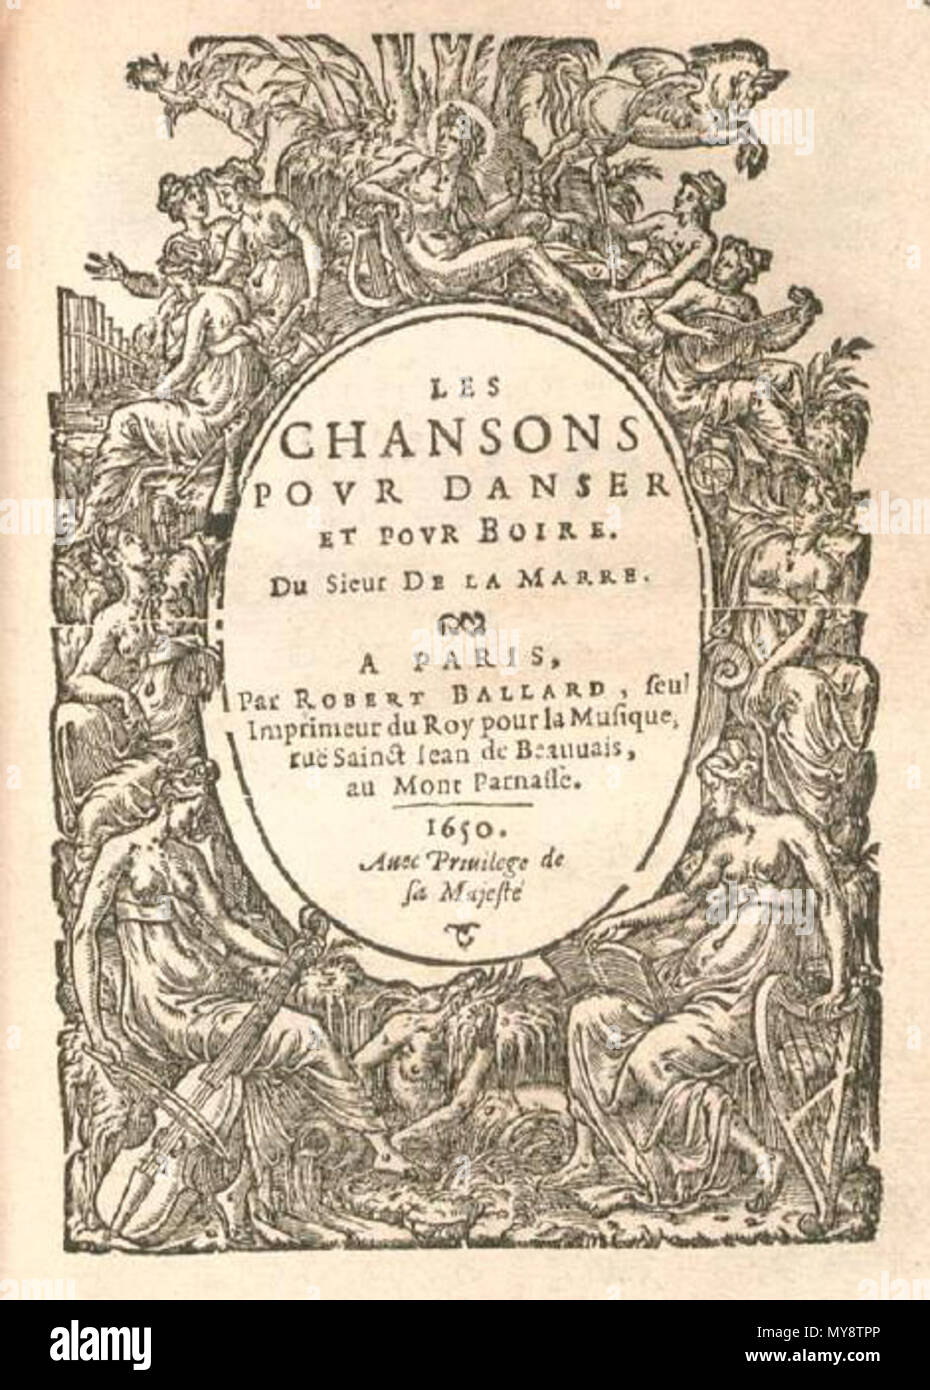 . Français : Les Chansons pour danser et pour boire de la marre (Paris, 1650). 1650. La Marre - Chansons pour danser et pour boire, 1650. 309 La Marre - Chansons 1650 Banque D'Images